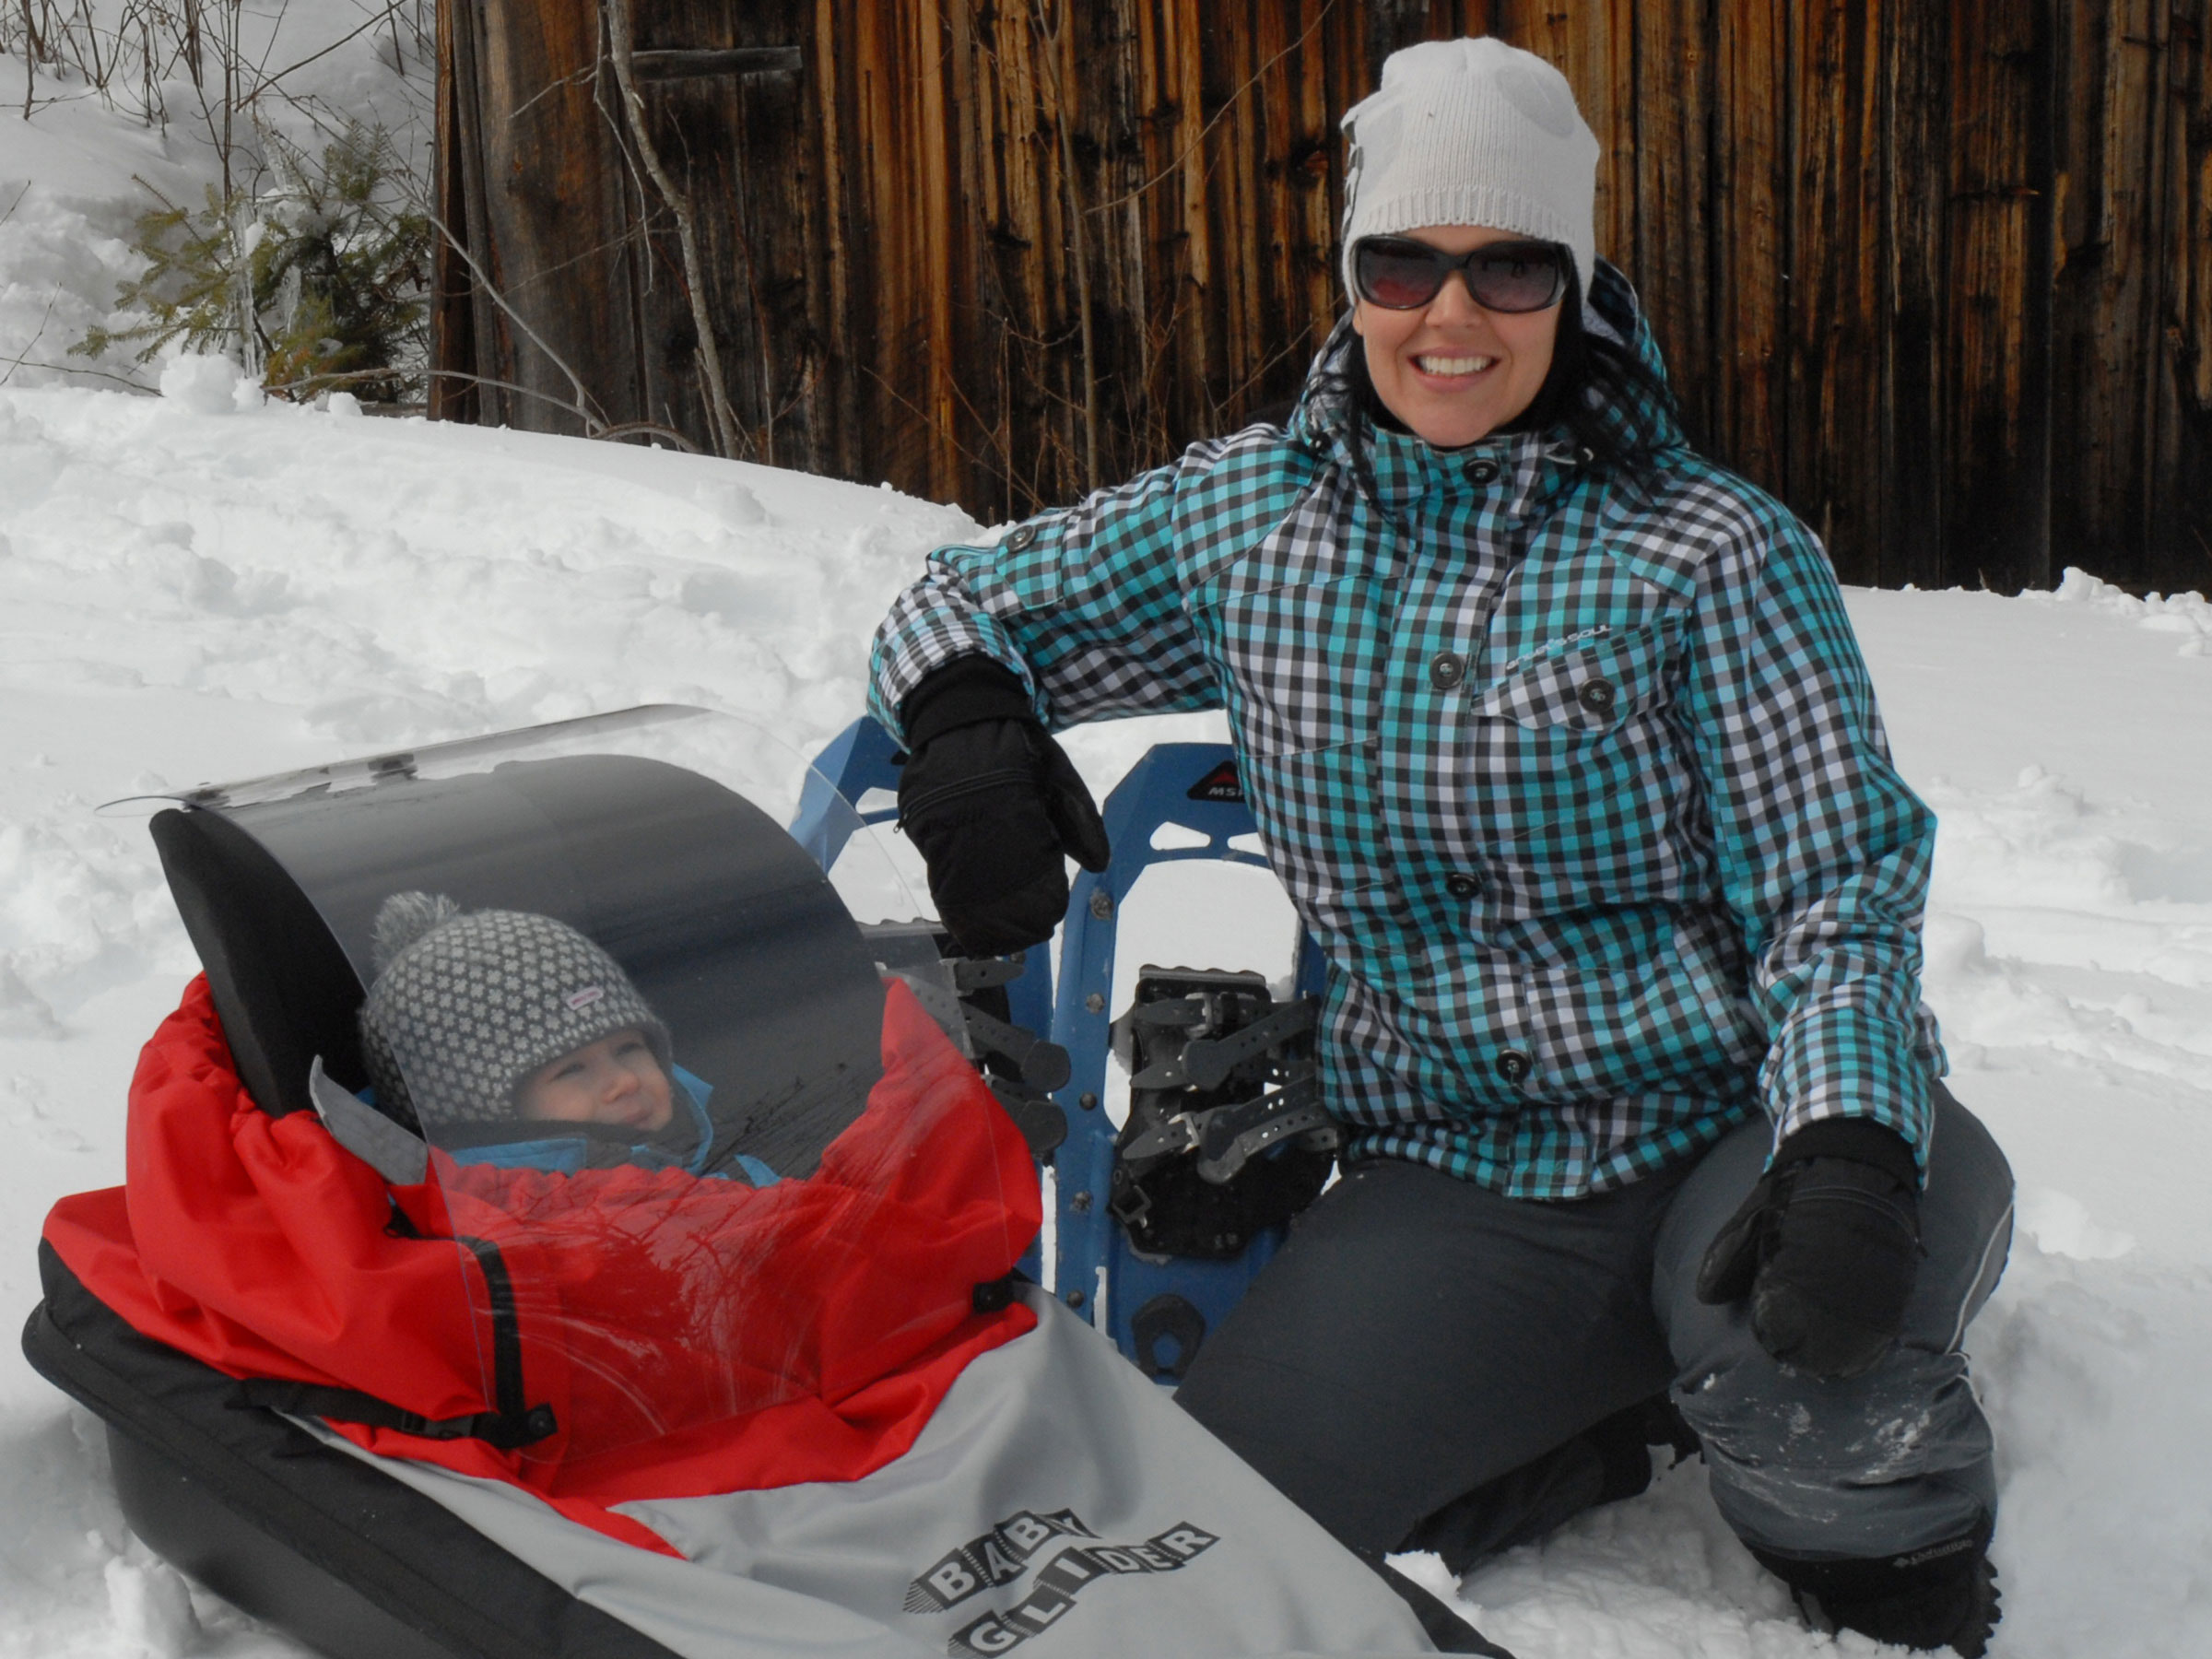 Baby Glider, la pulka idéale pour faire du ski de fond accompagné de son jeune enfant.